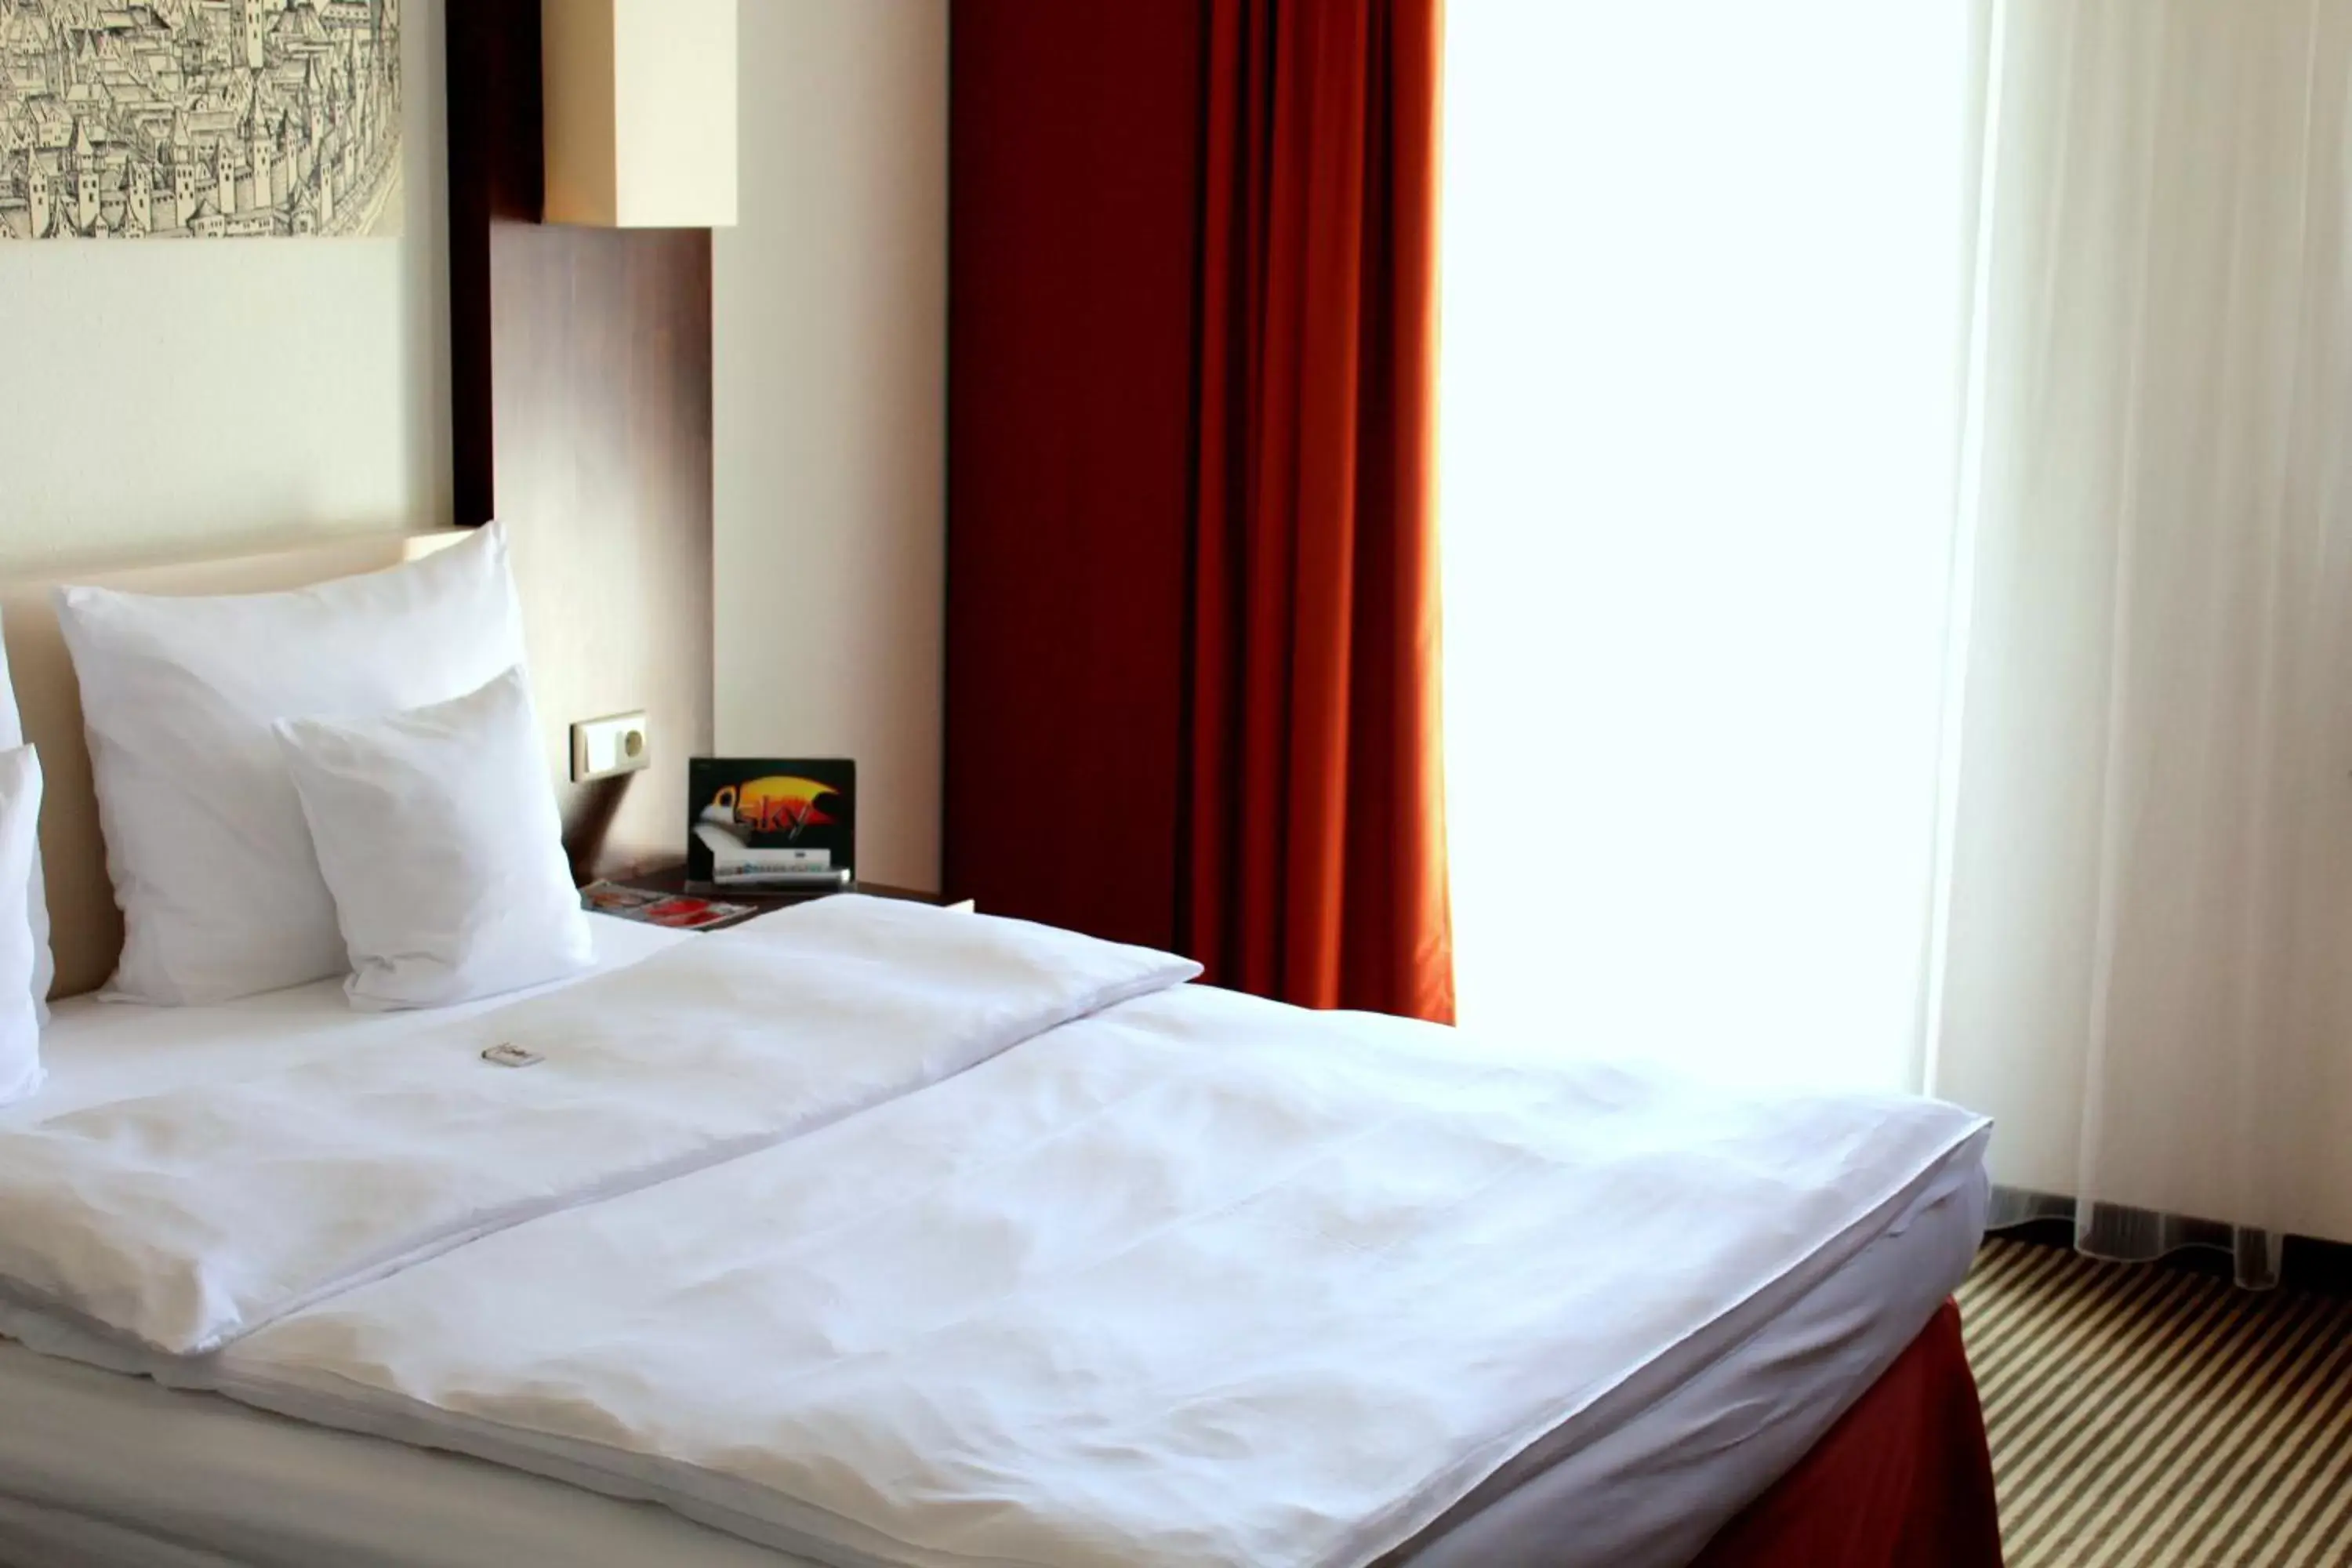 Bedroom, Room Photo in Best Western Hotel Nürnberg City West